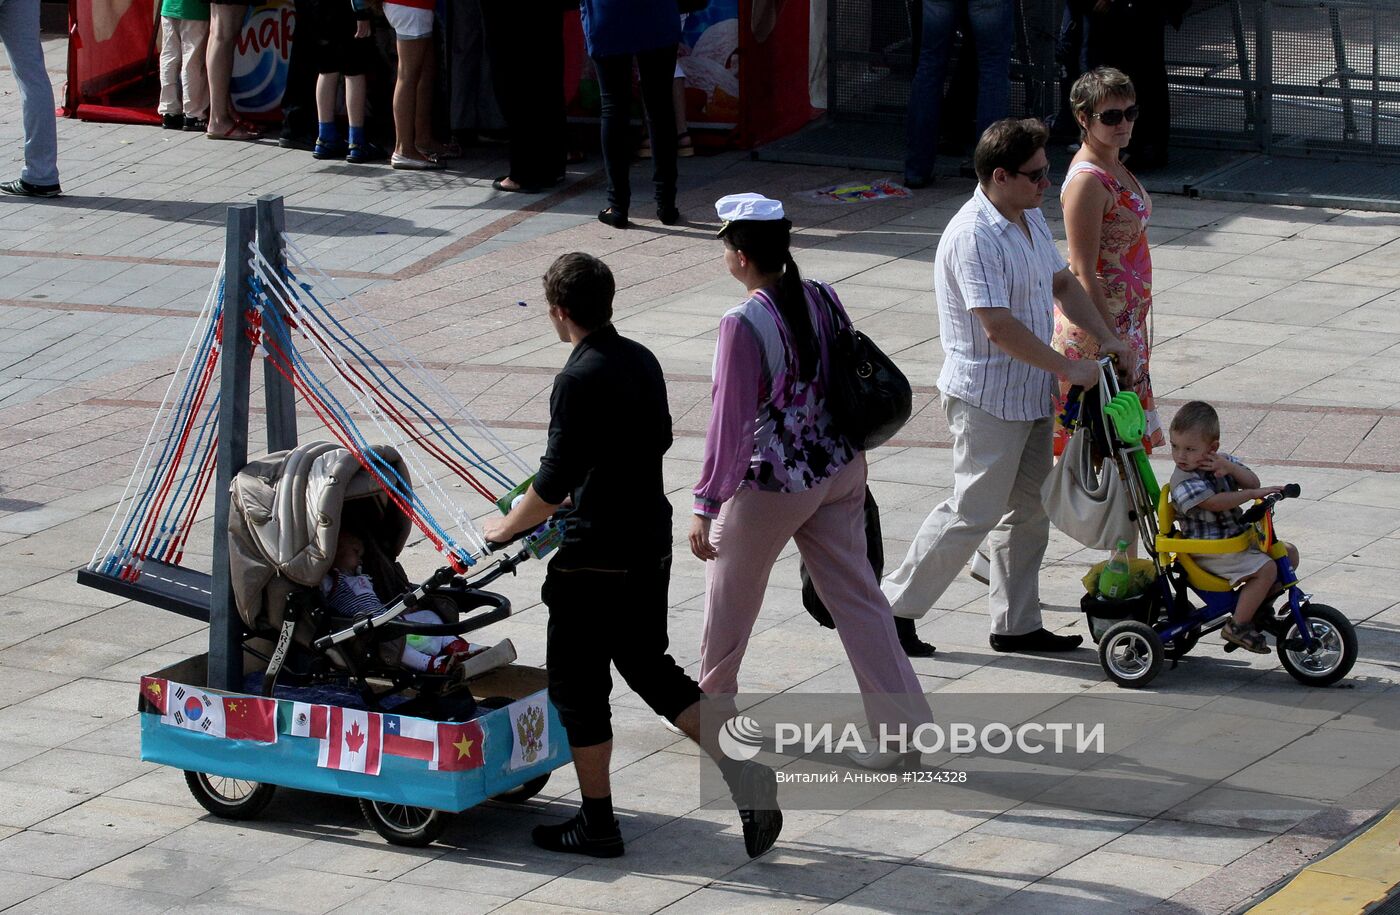 Народные гуляния в центре Владивостока